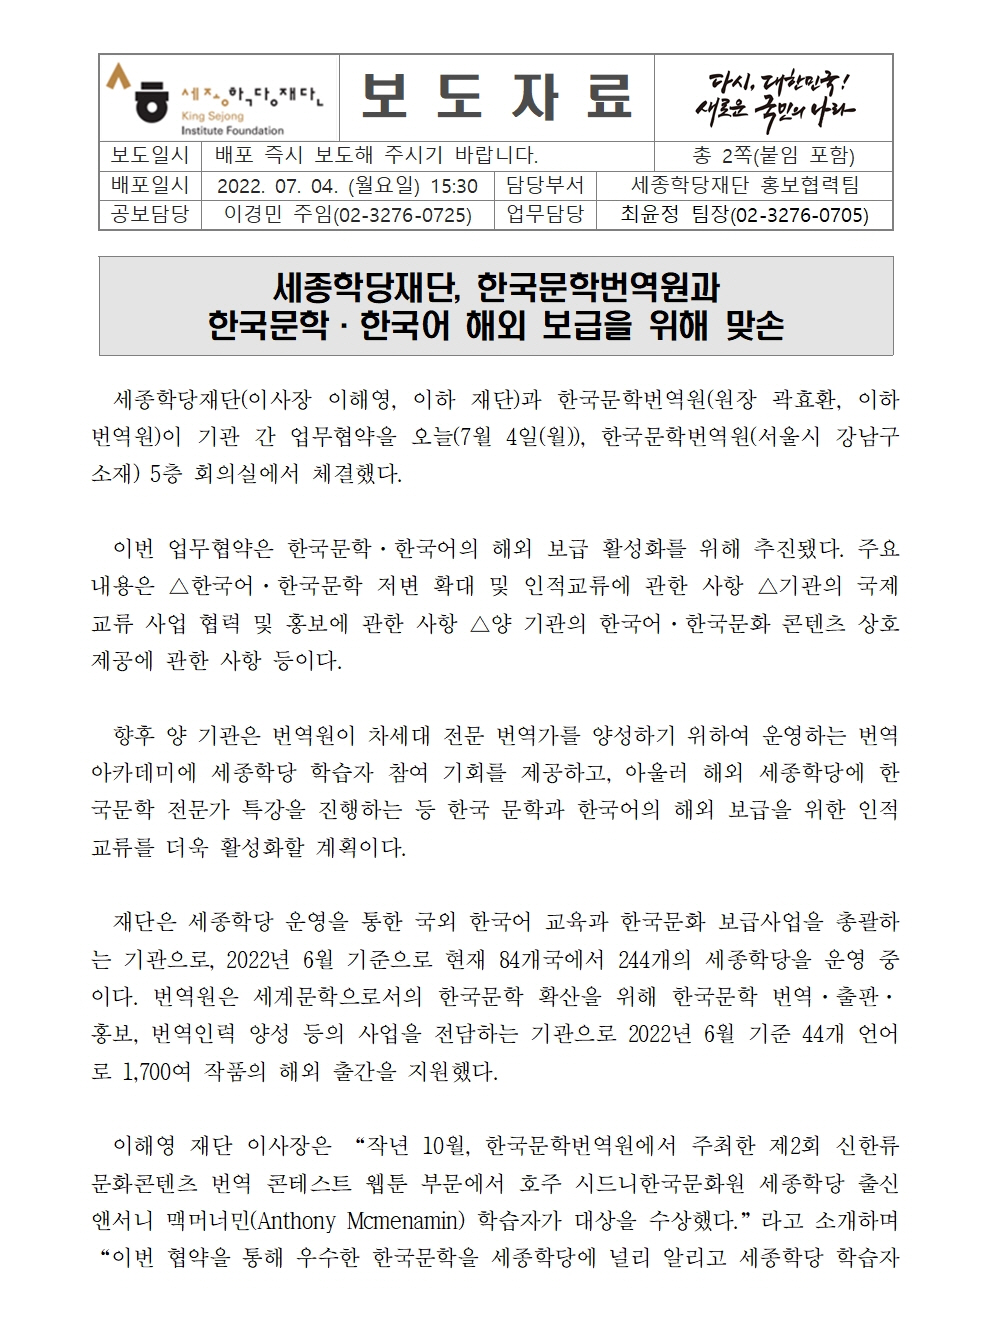 세종학당재단 한국문학번역원과 업무협약 체결(보도자료)001